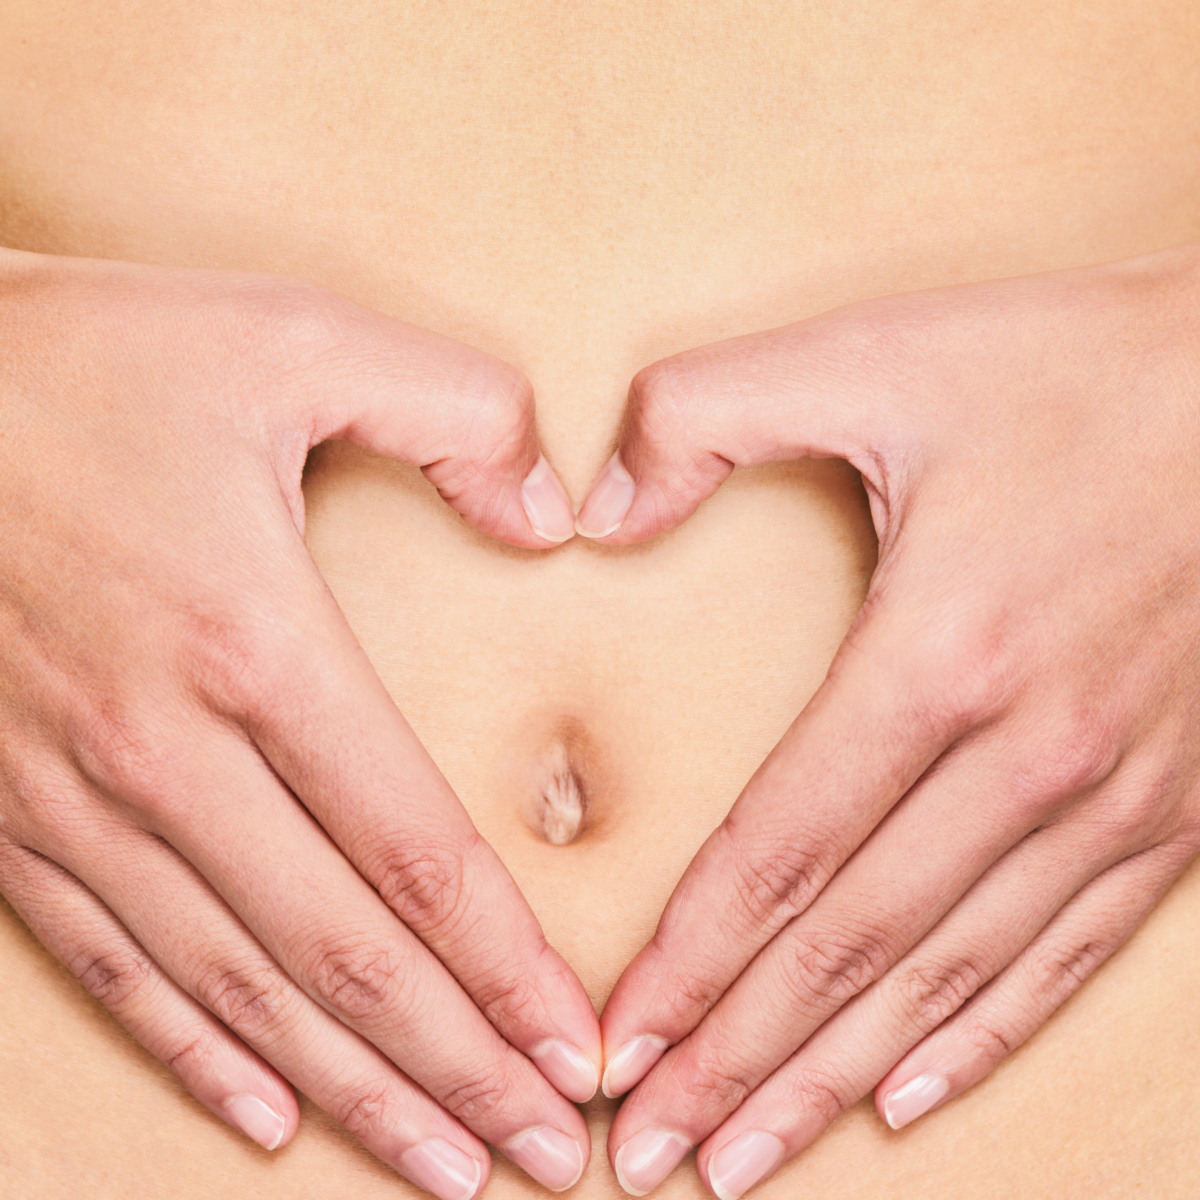 Probiotici-in-gravidanza-risponde-la-Dr.ssa-Giulia-Raponi-1200x1200.png